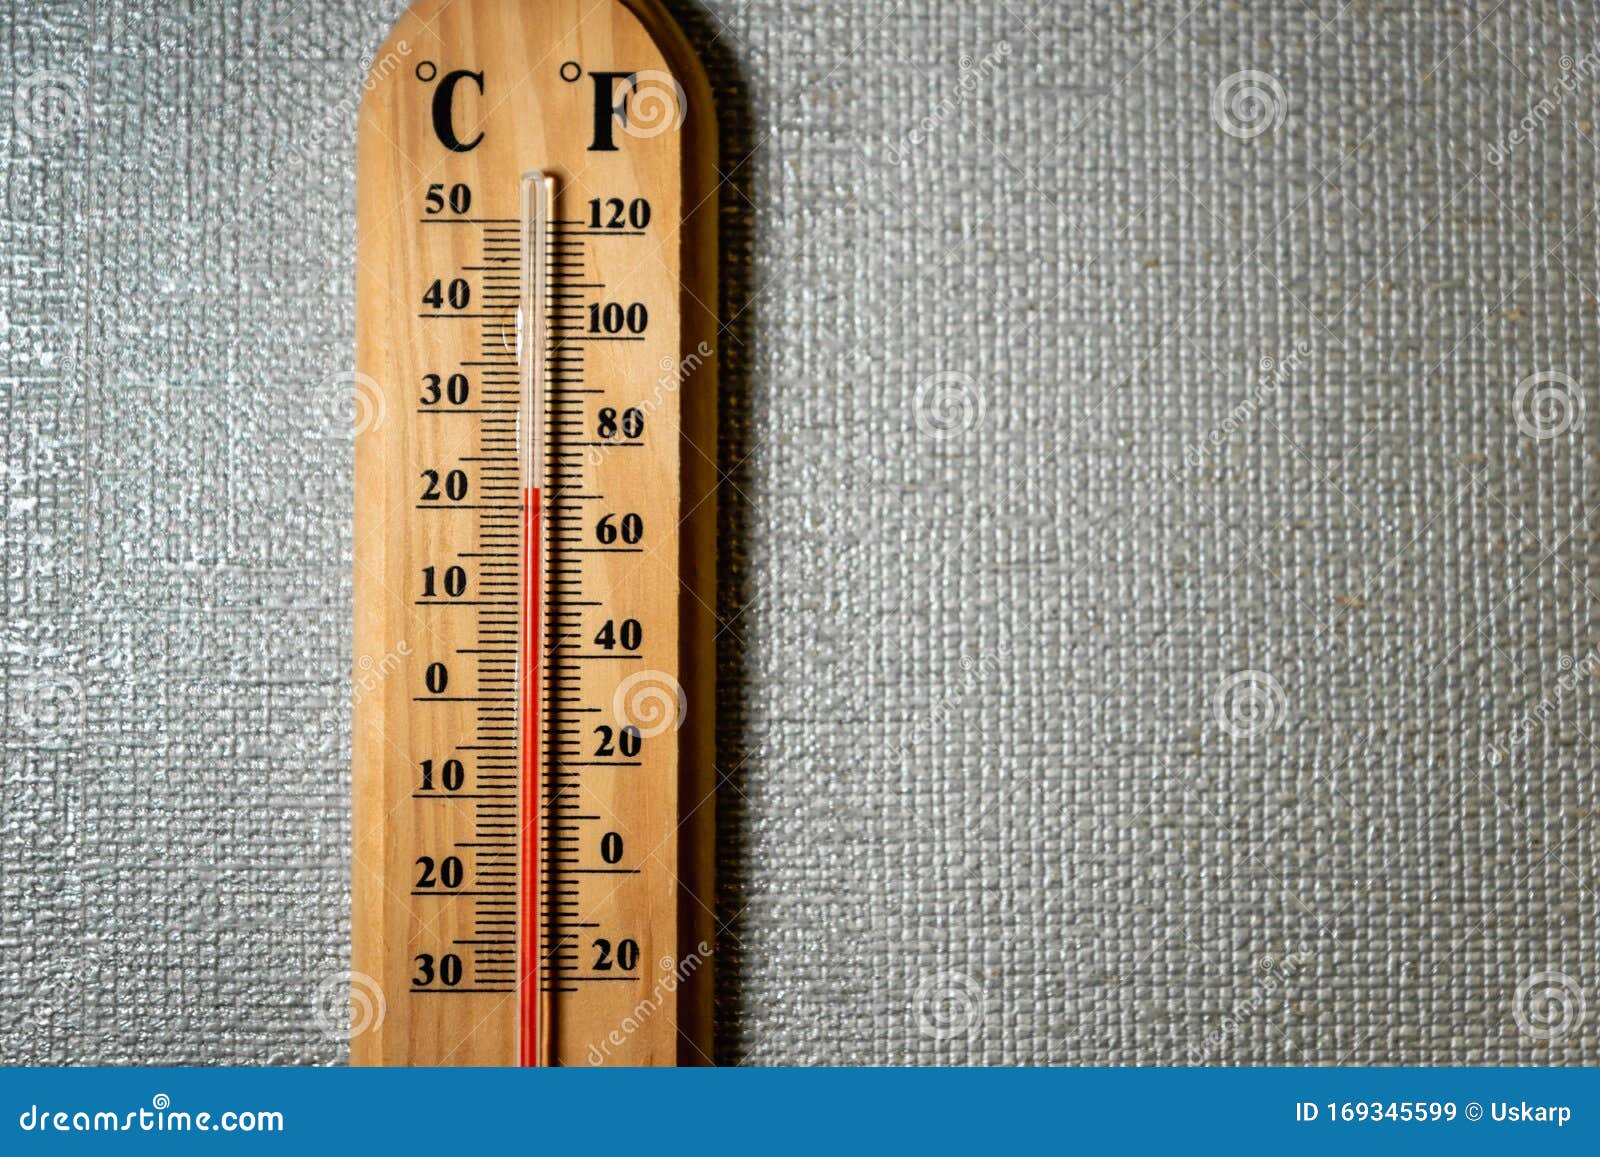 Temperaturmesser / Thermometer an Der Weißen Wand - Analoges  Temperaturmessgerät Stockbild - Bild von lehre, messen: 169345599